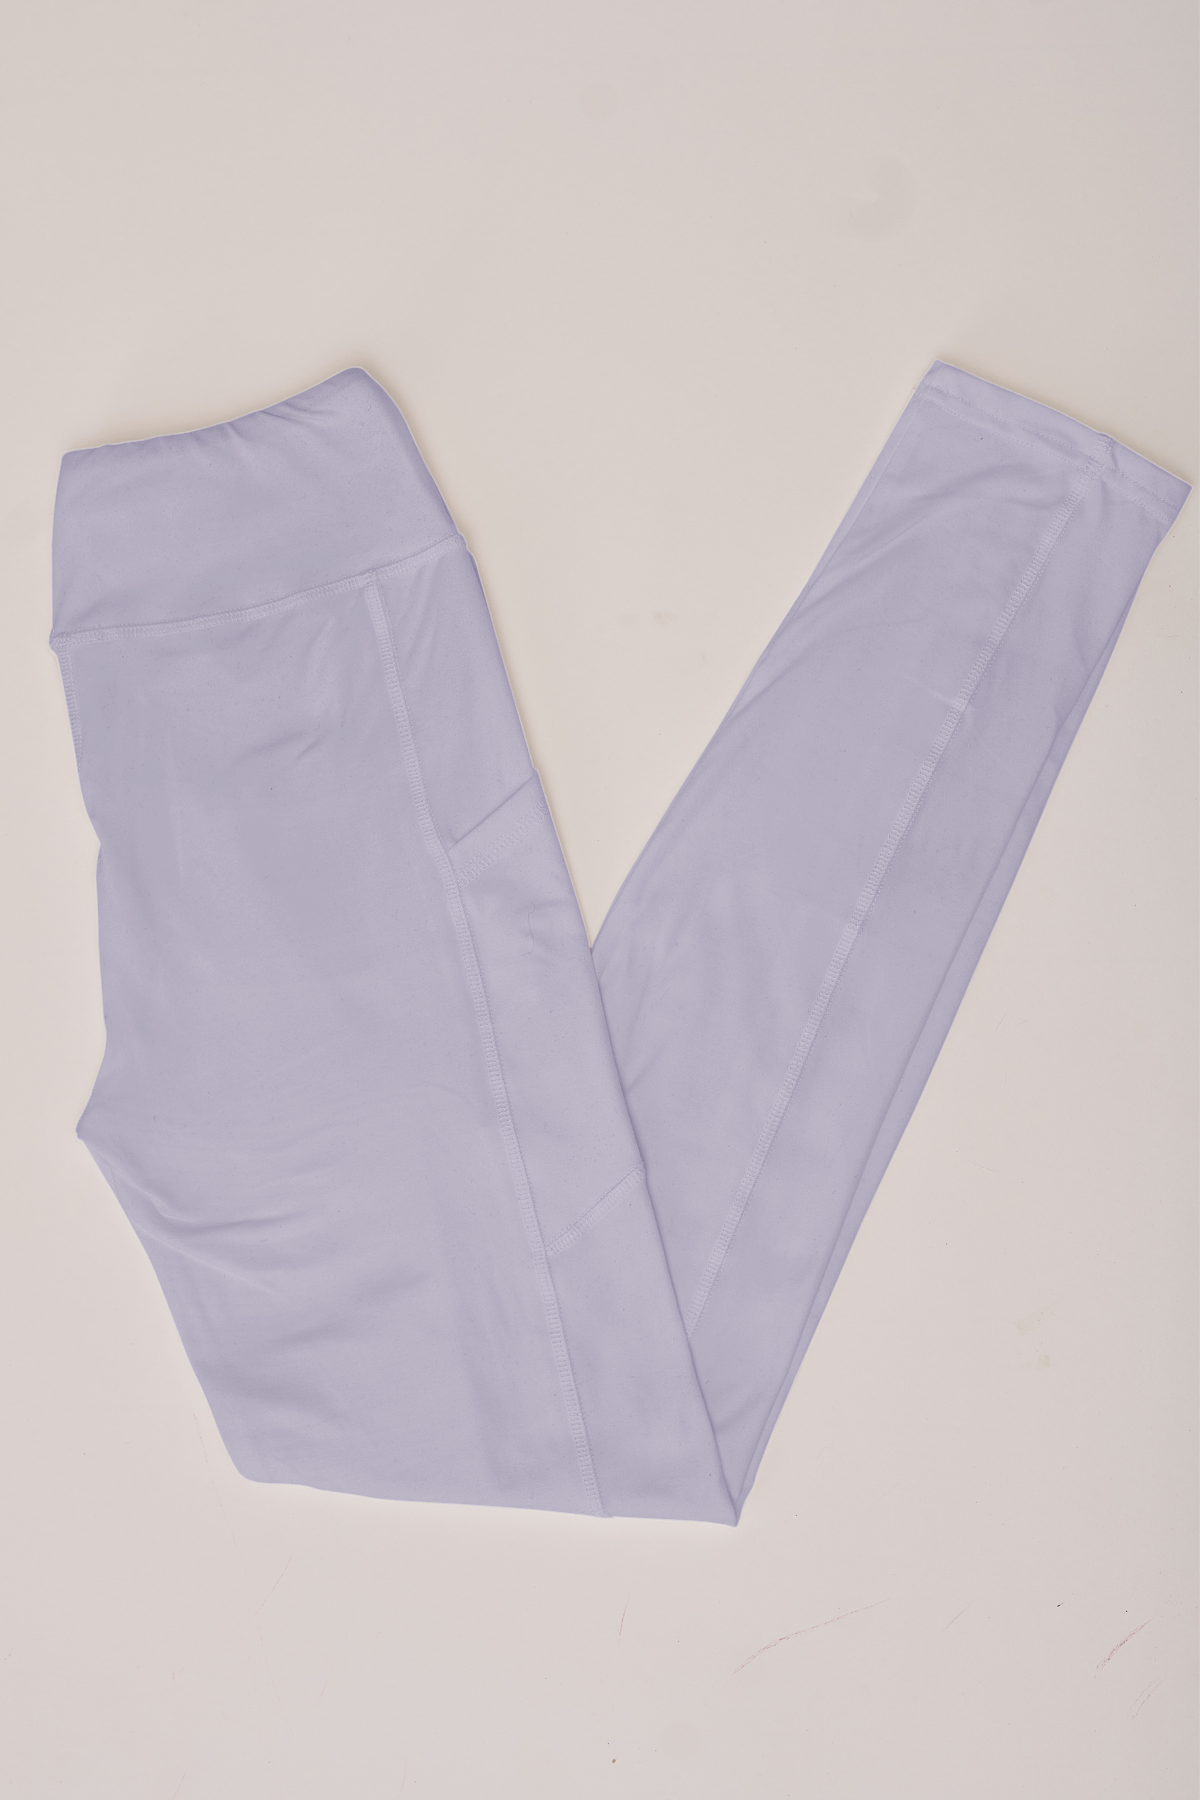 oolala Leggings Solid Light Purple with Pockets 🦋 oolala ButterflySoft™ | Solid Light Purple with Pockets Women's Leggings